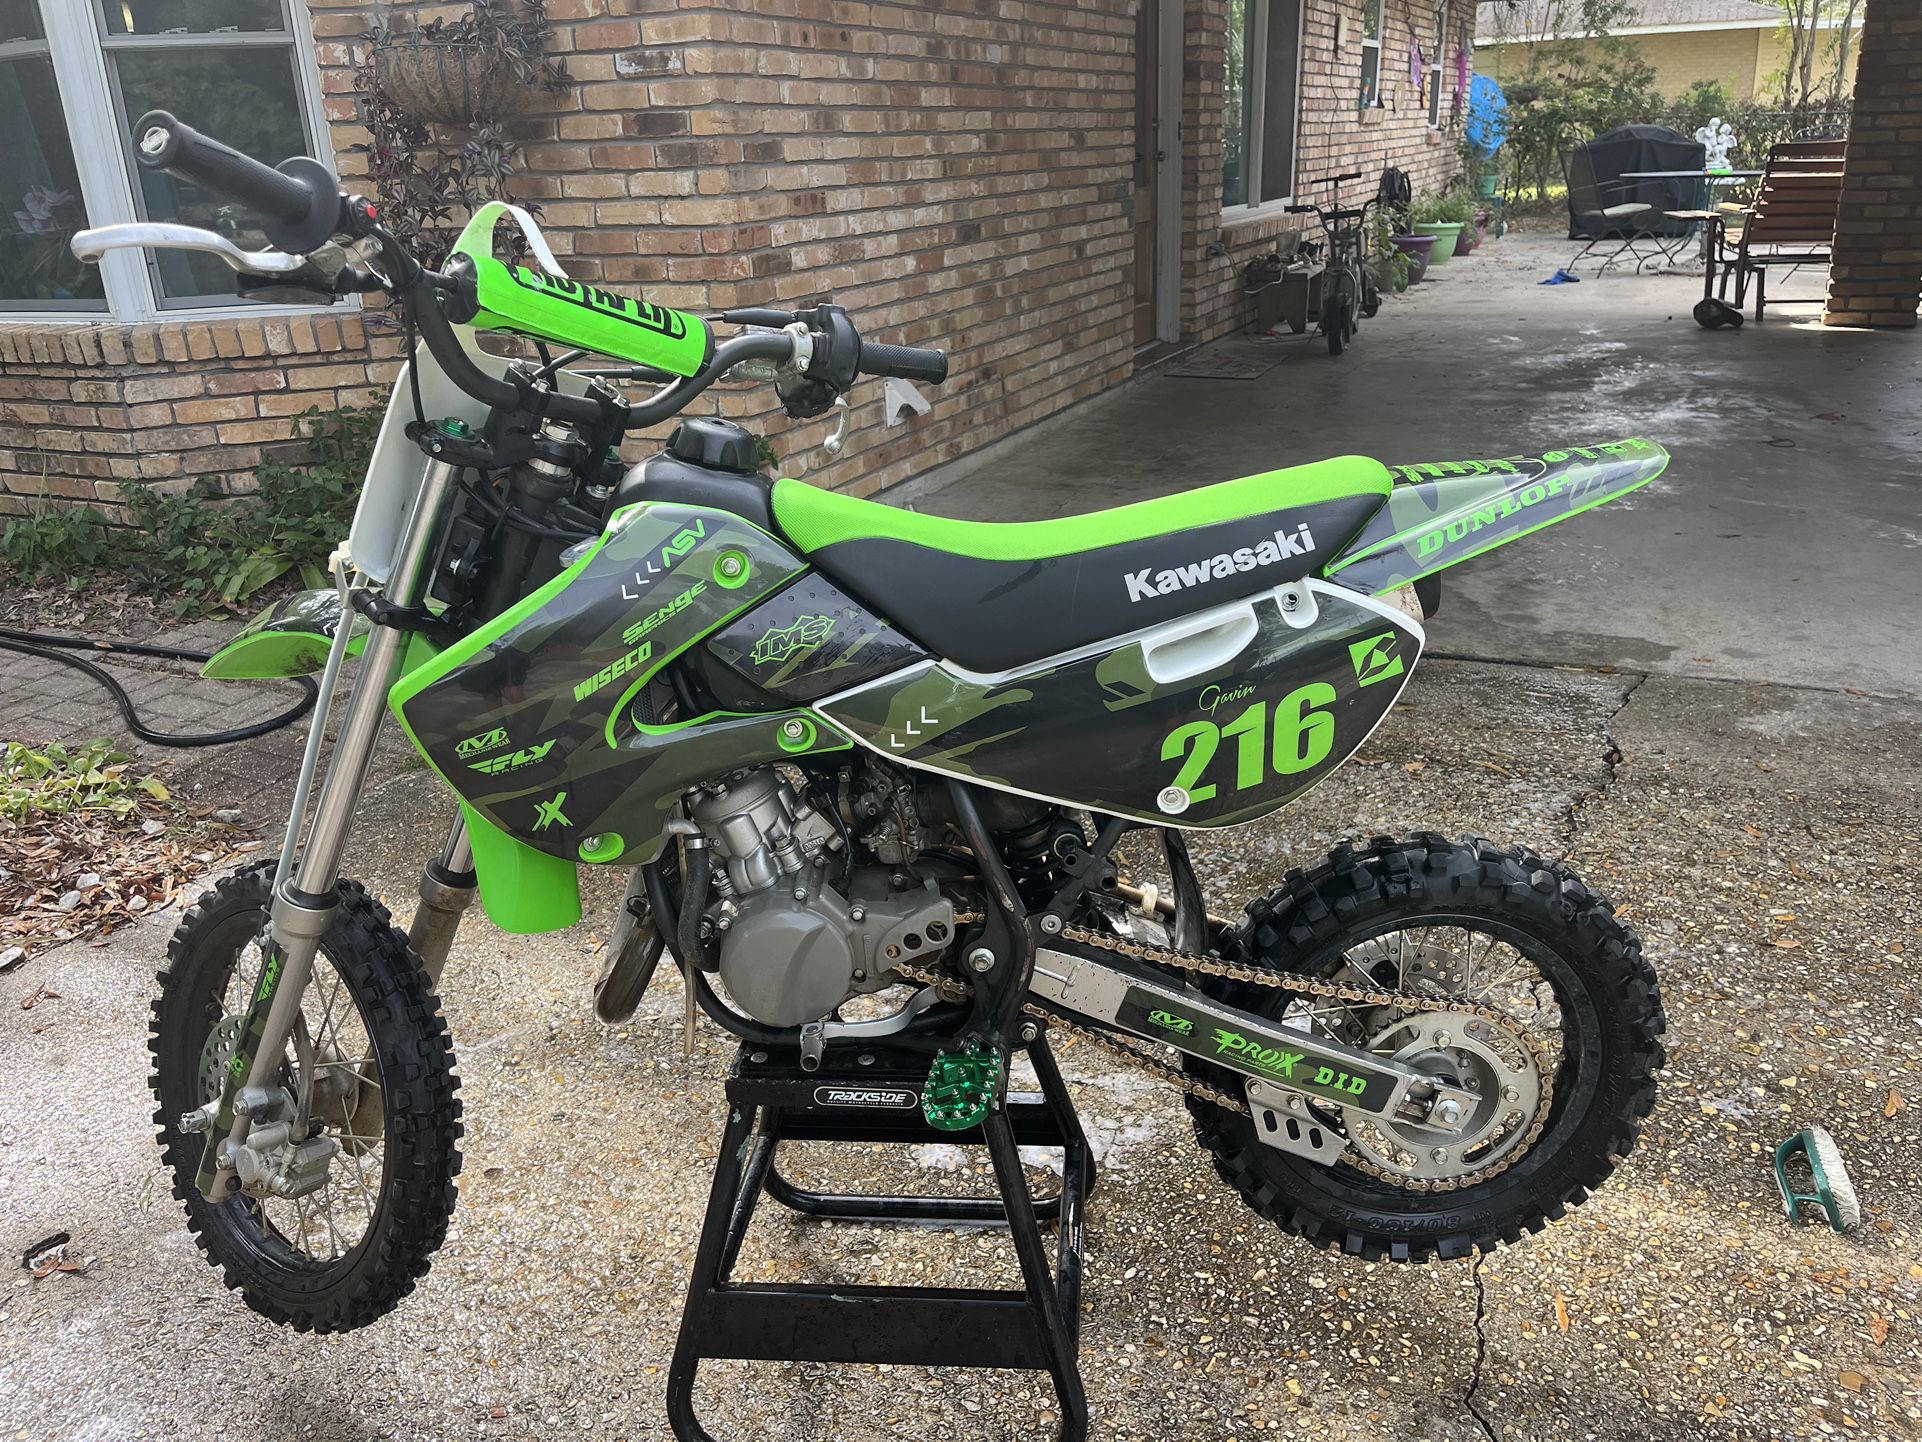 2019 Kawasaki Kx 65